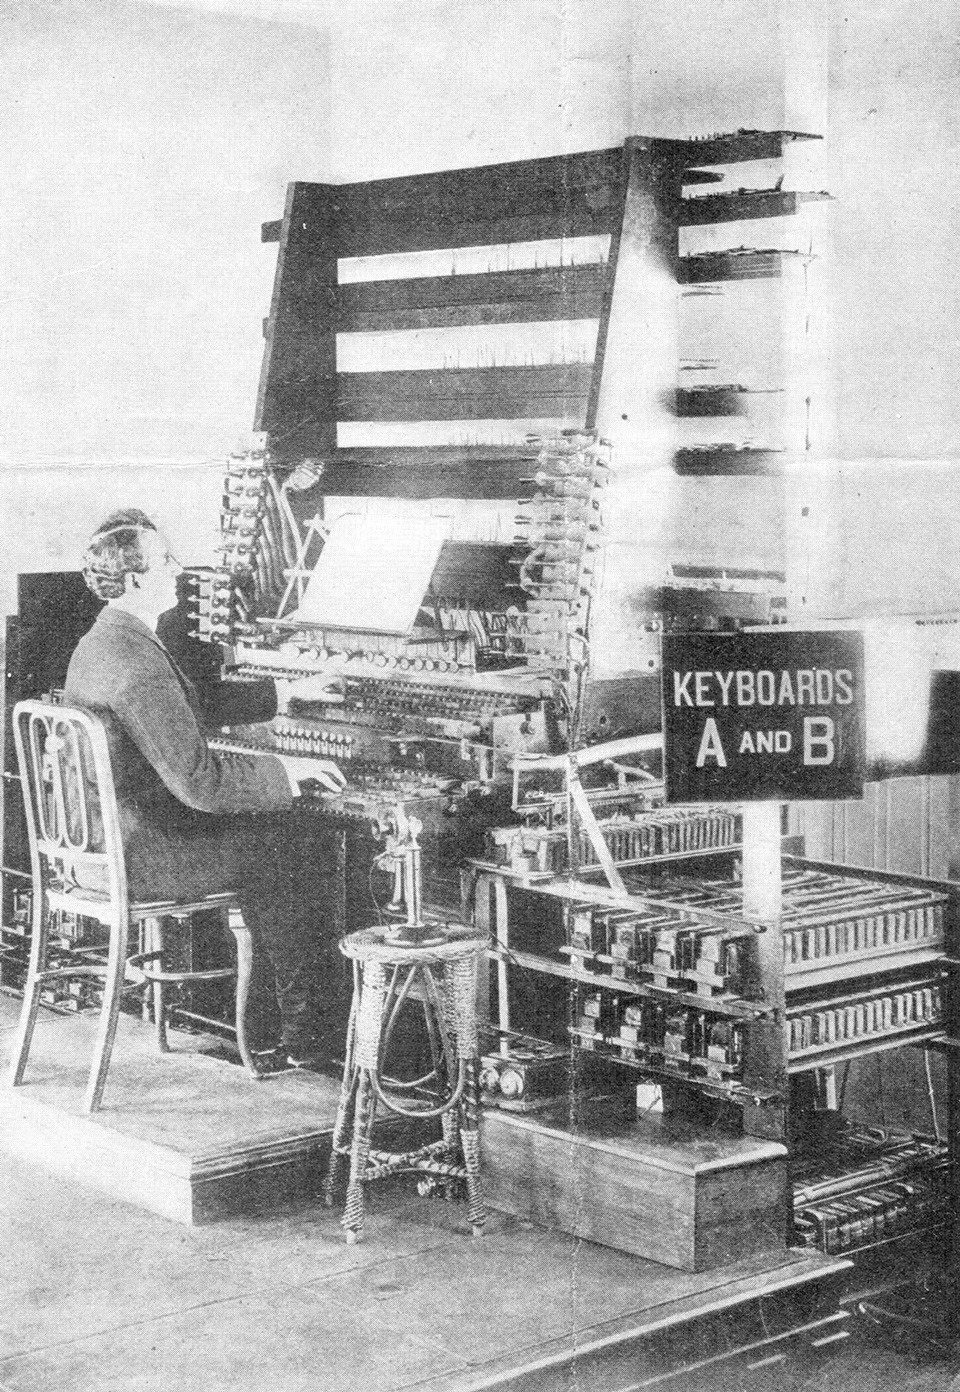 جهاز بث الموسيقى للمخترع (ثاديوس كاهيل).